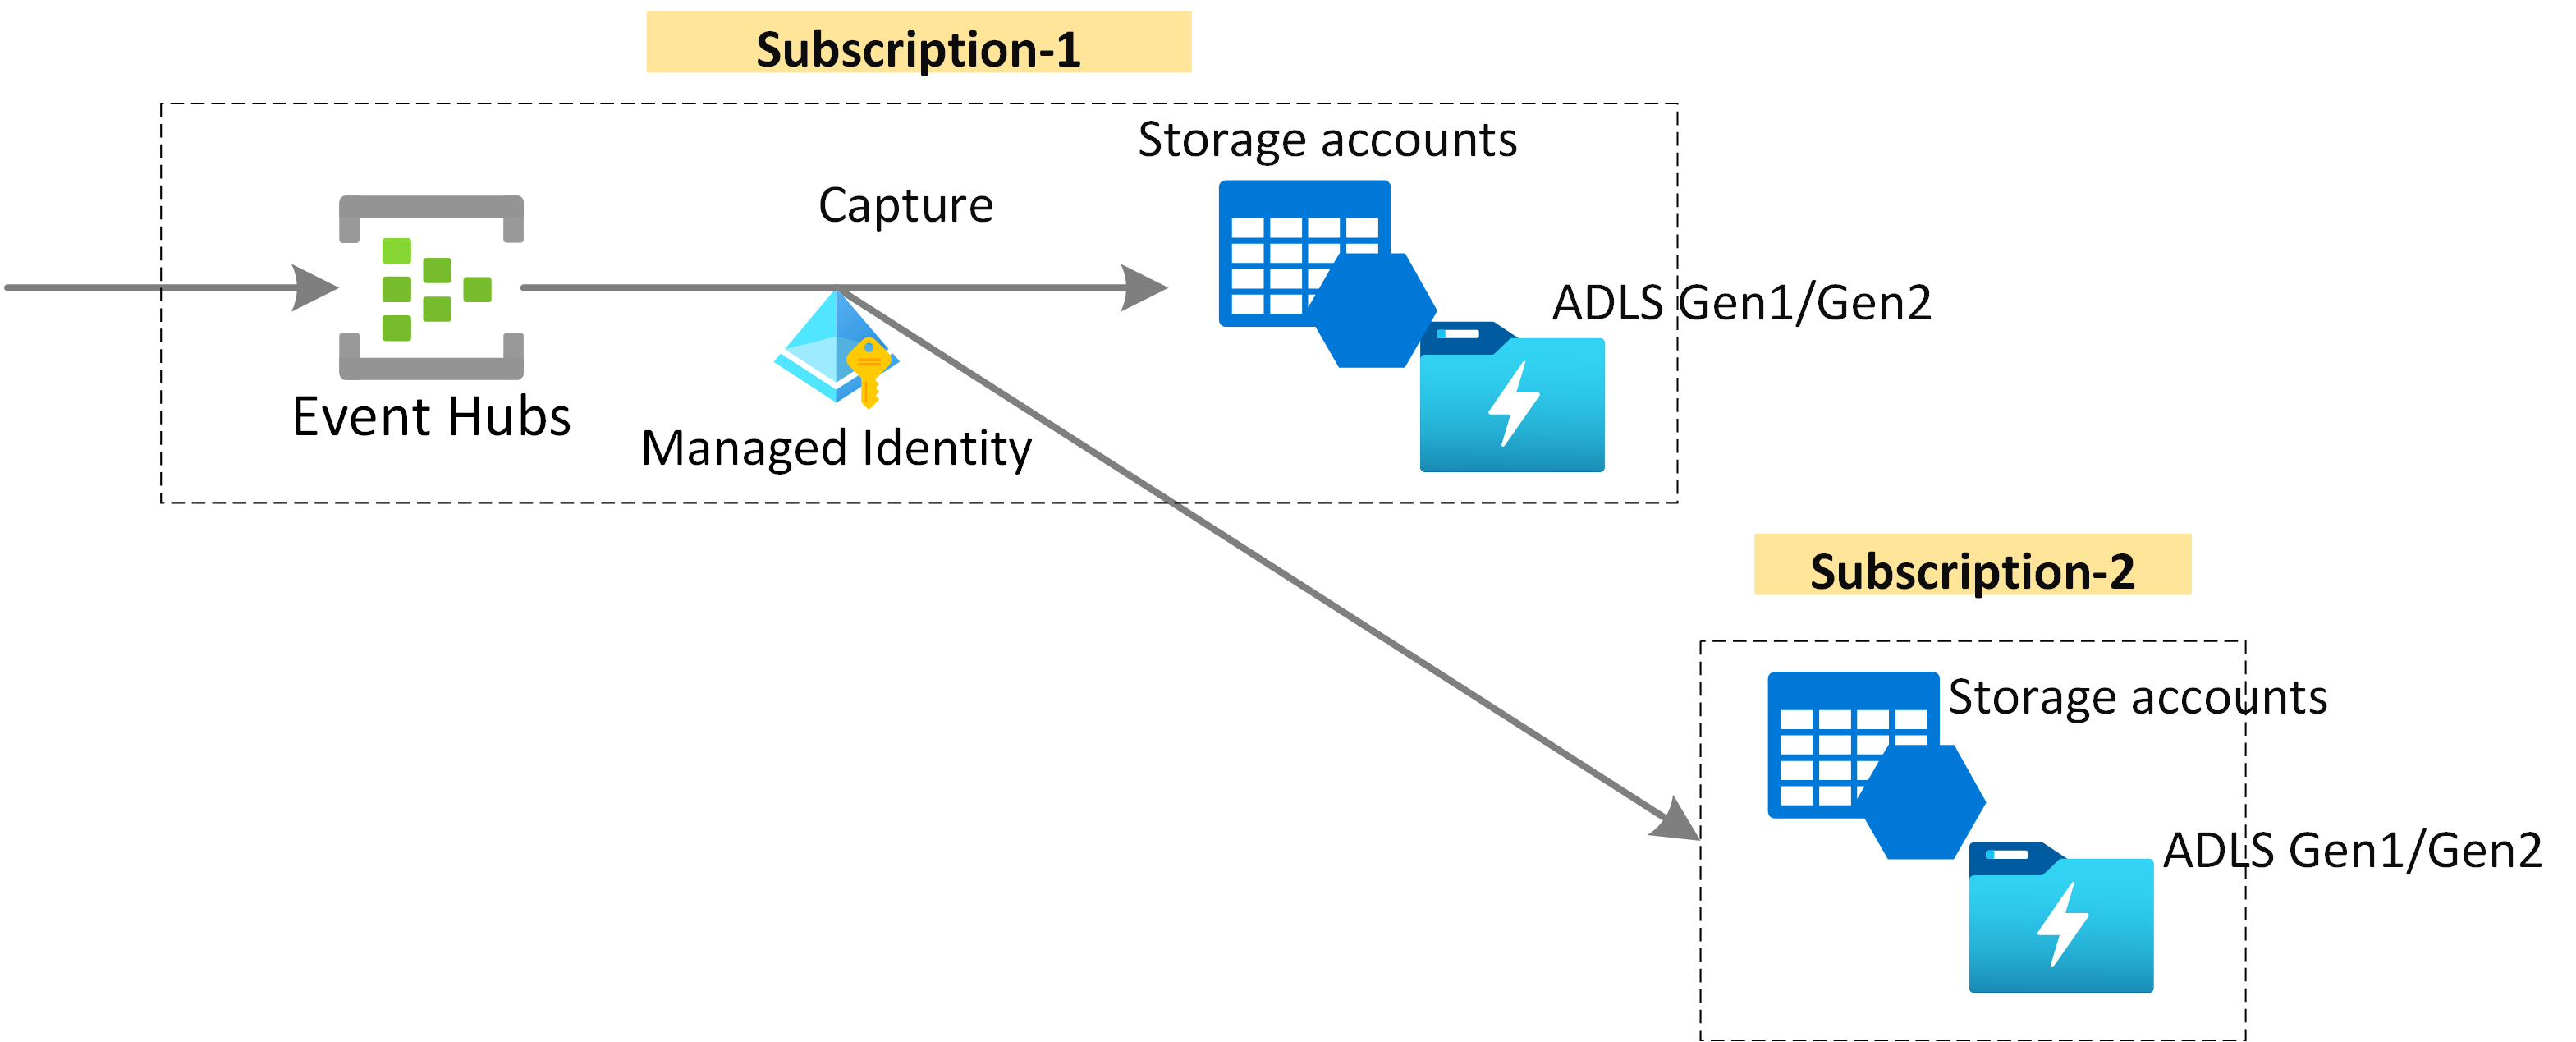 Imagem mostrando a captura de dados dos Hubs de Eventos no Armazenamento do Azure ou no Azure Data Lake Storage usando a identidade gerenciada